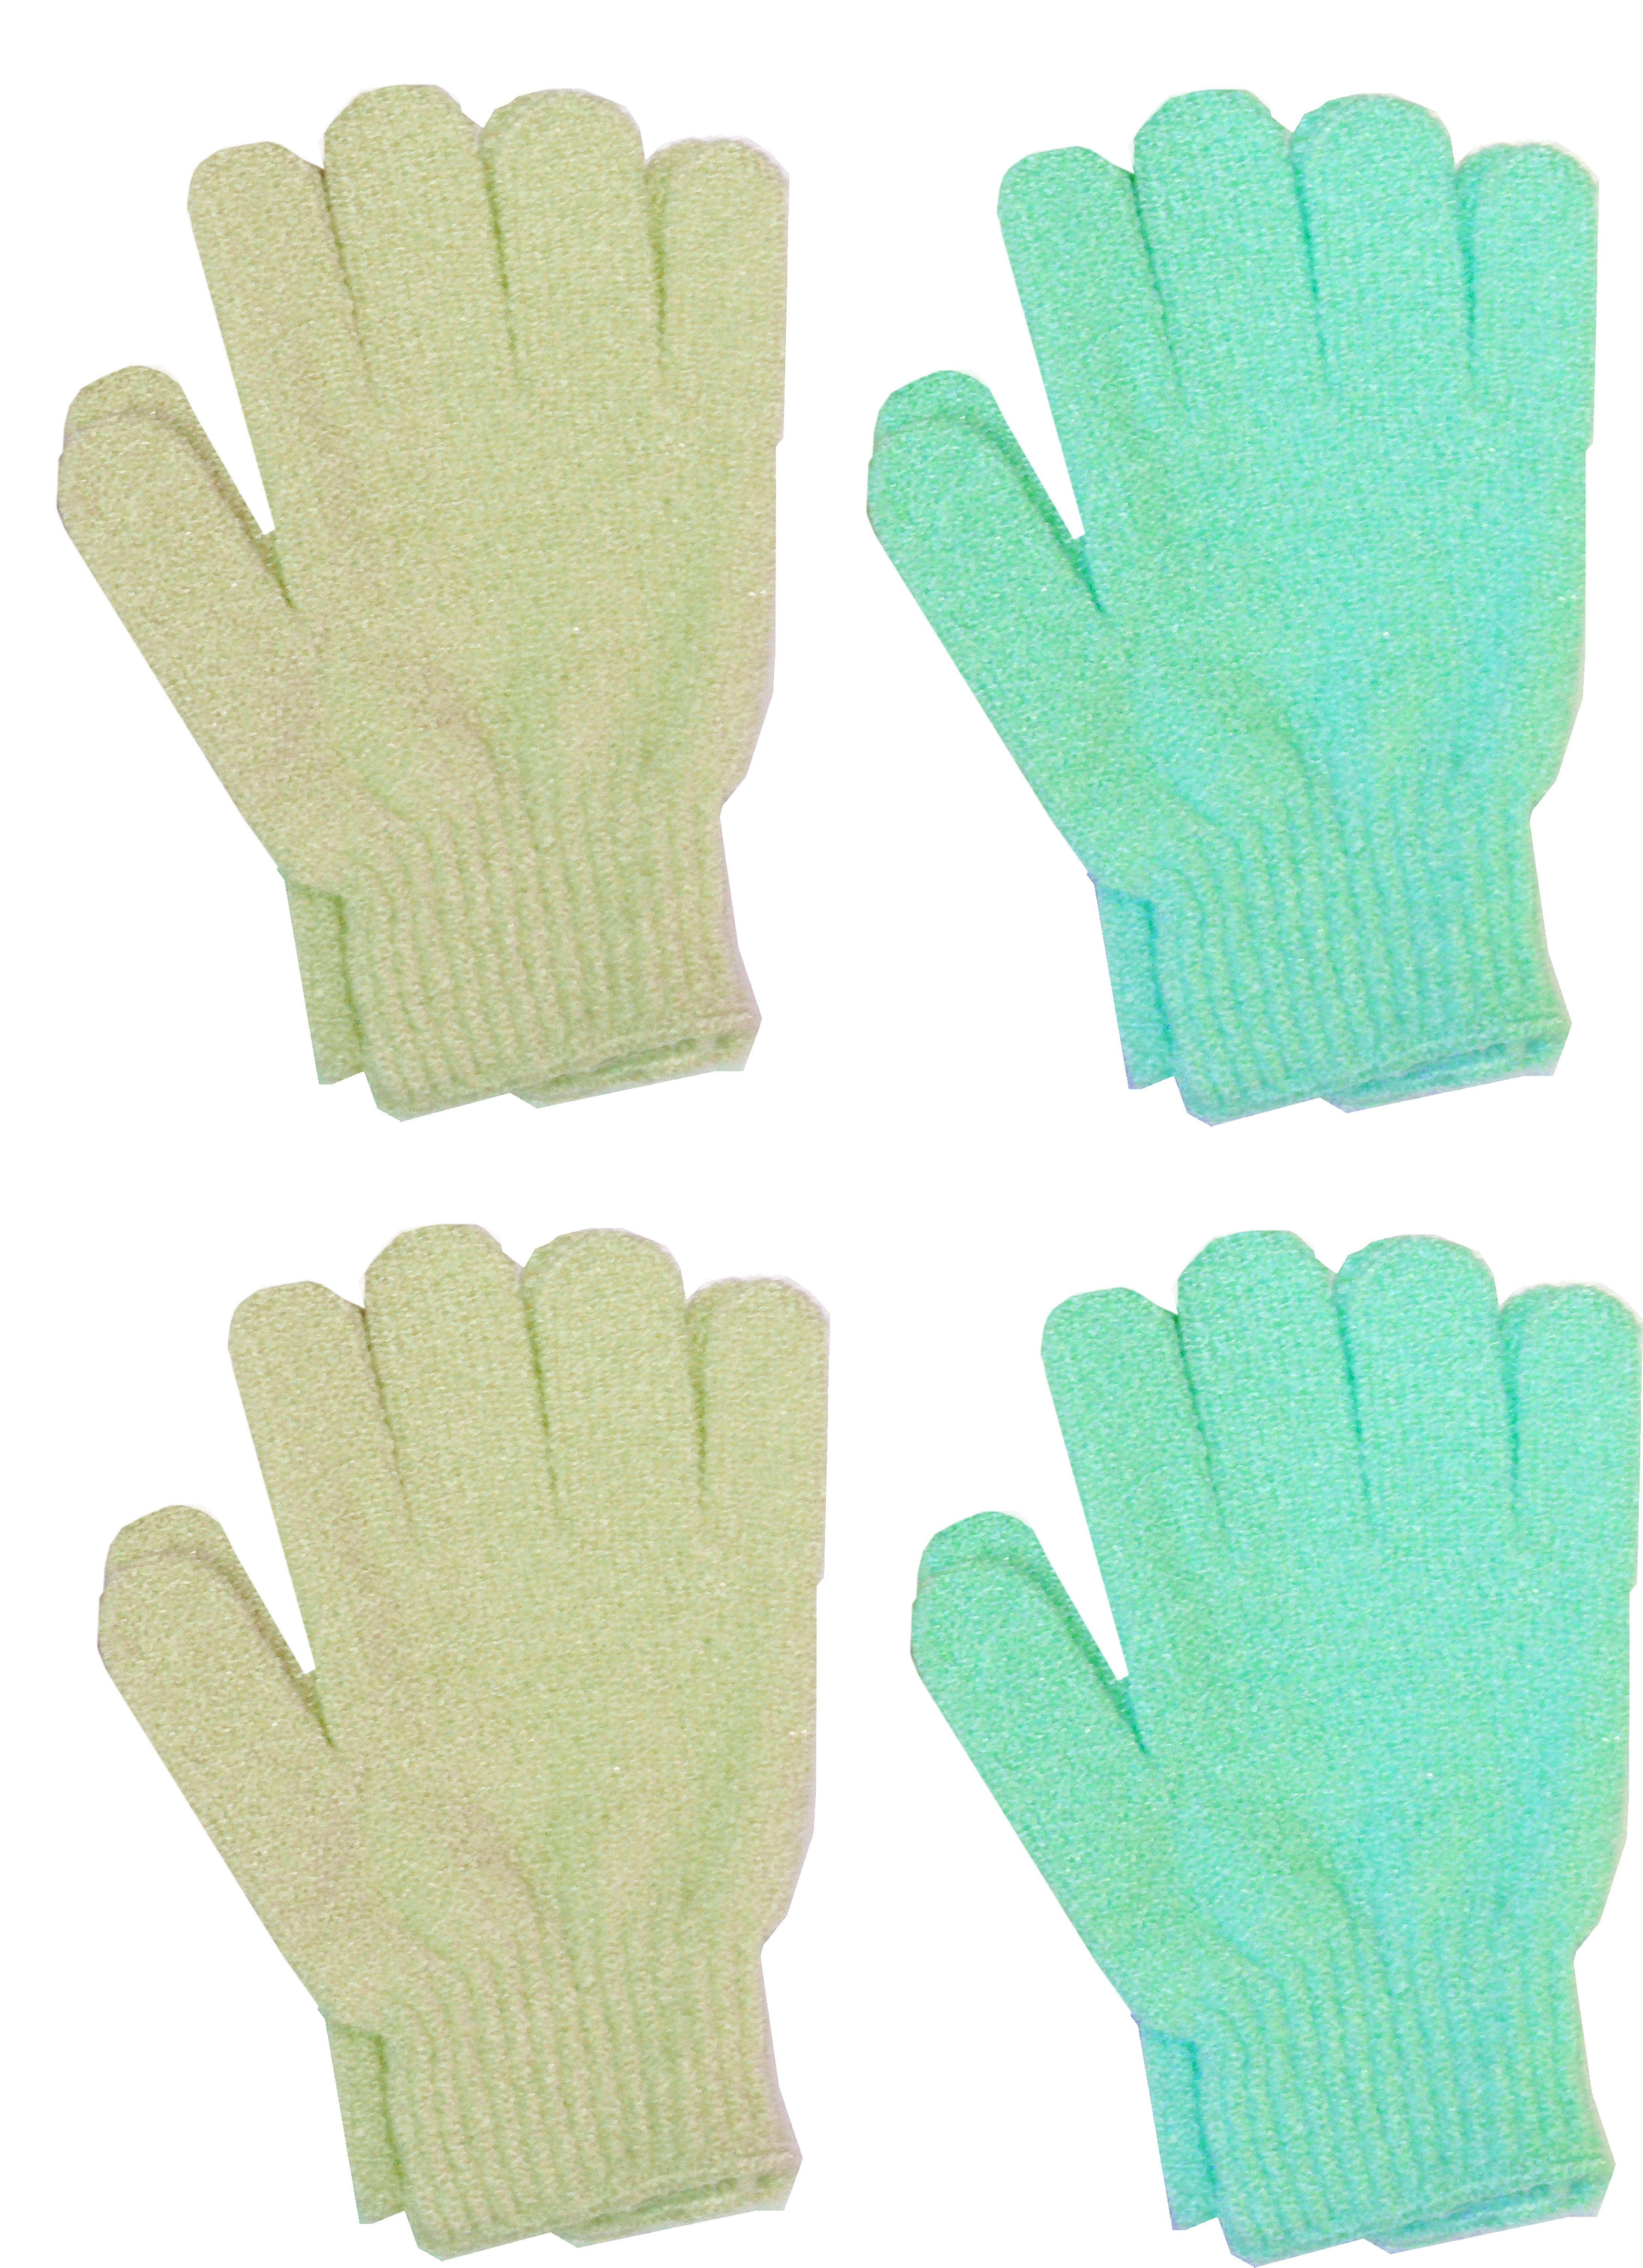 Aquasentials Exfoliating Bath Gloves (4 Pairs) - image 1 of 4